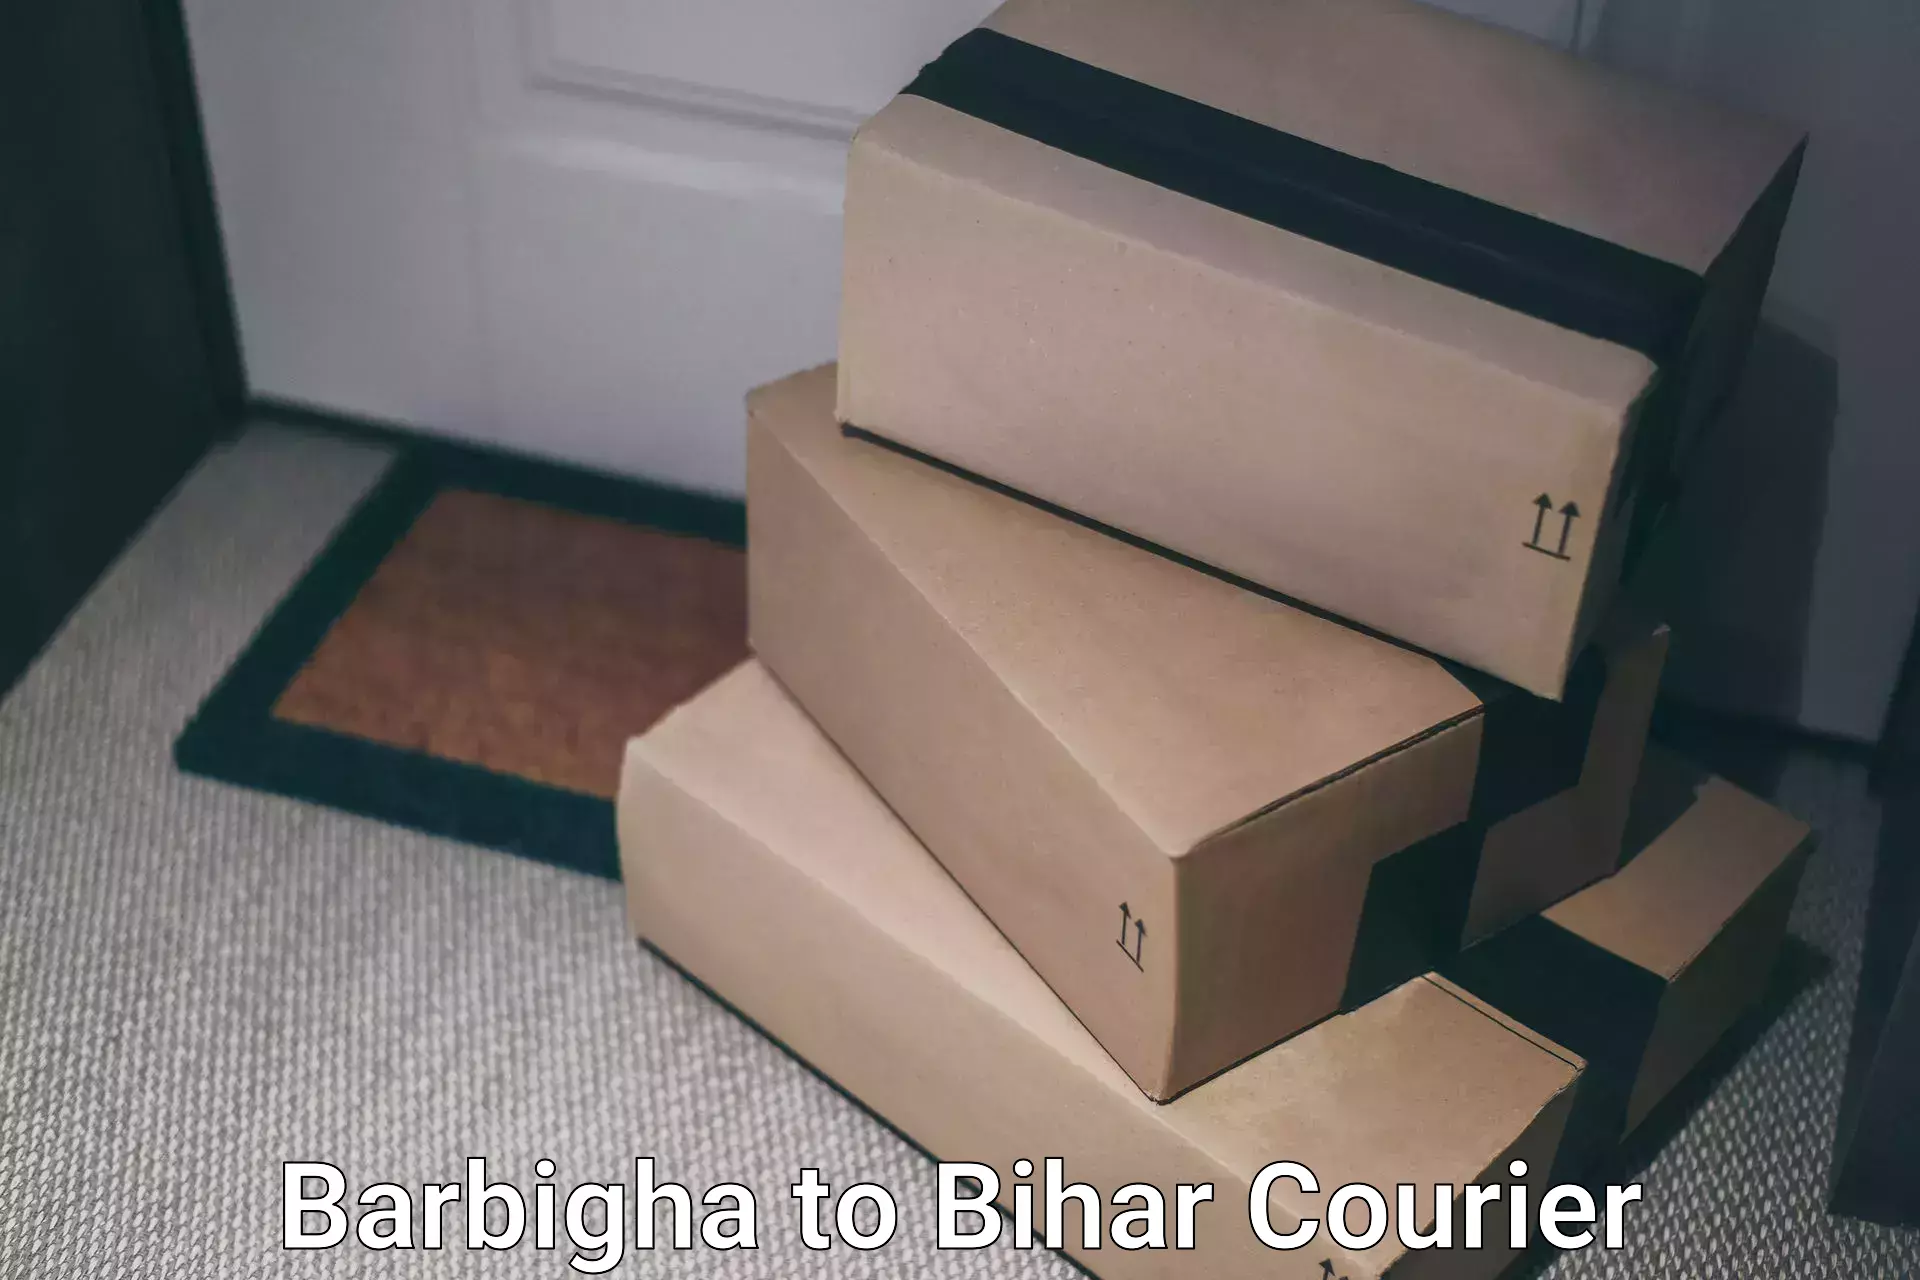 Courier app Barbigha to Bankipore